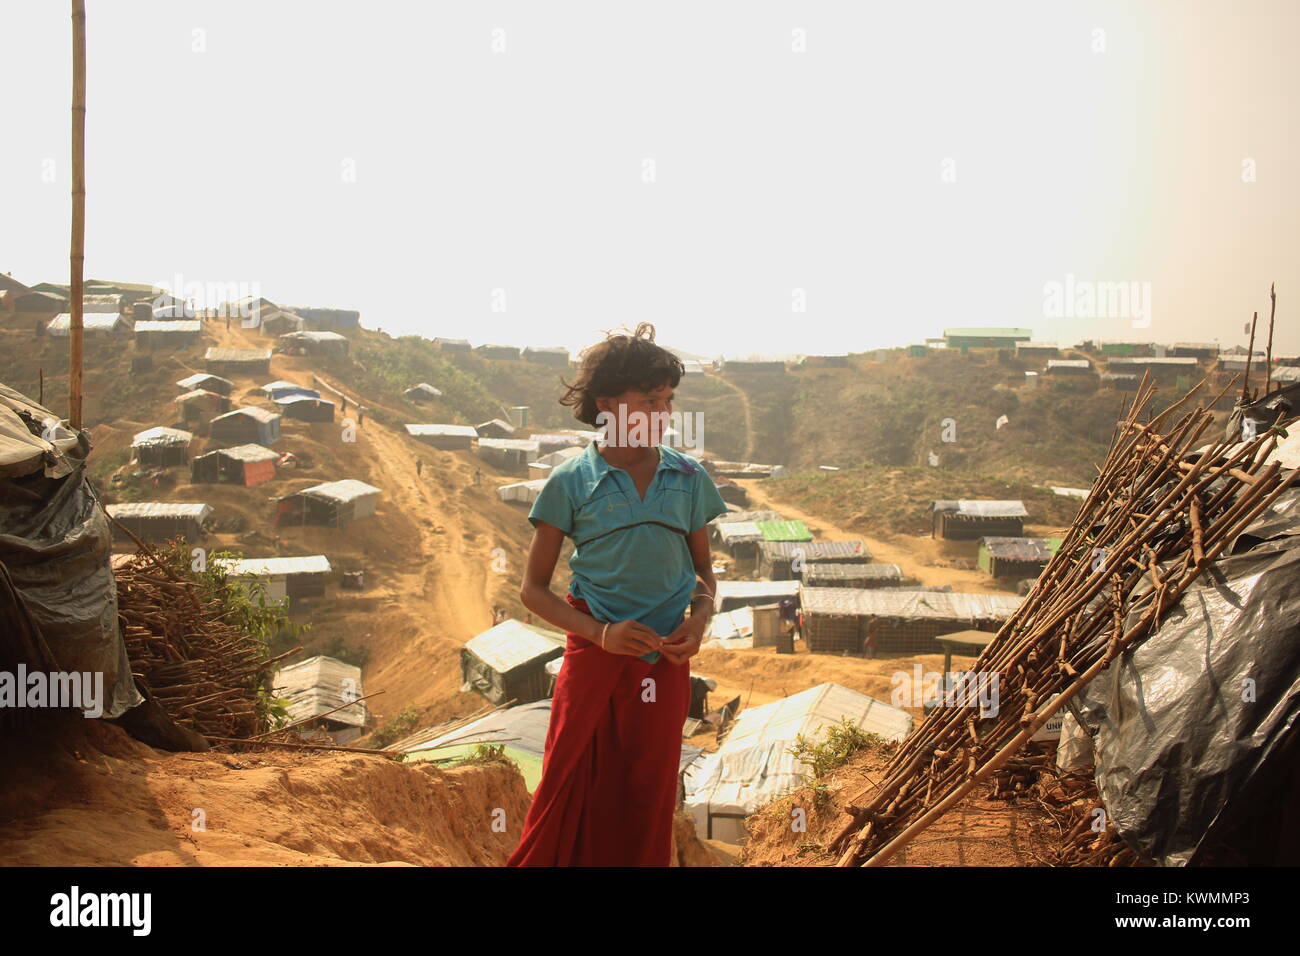 22 novembre 2017 - Cox's Bazar, Bangladesh - Une fille de réfugiés vu dans le camp de réfugiés.Plus de 600 000 réfugiés Rohingyas ont fui l'État de Rakhine au Myanmar depuis août 2017, comme la plupart d'entre eux continuer à essayer de traverser la frontière pour atteindre le Bangladesh tous les jours. Credit : Asif Ahmed/SOPA/ZUMA/Alamy Fil Live News Banque D'Images